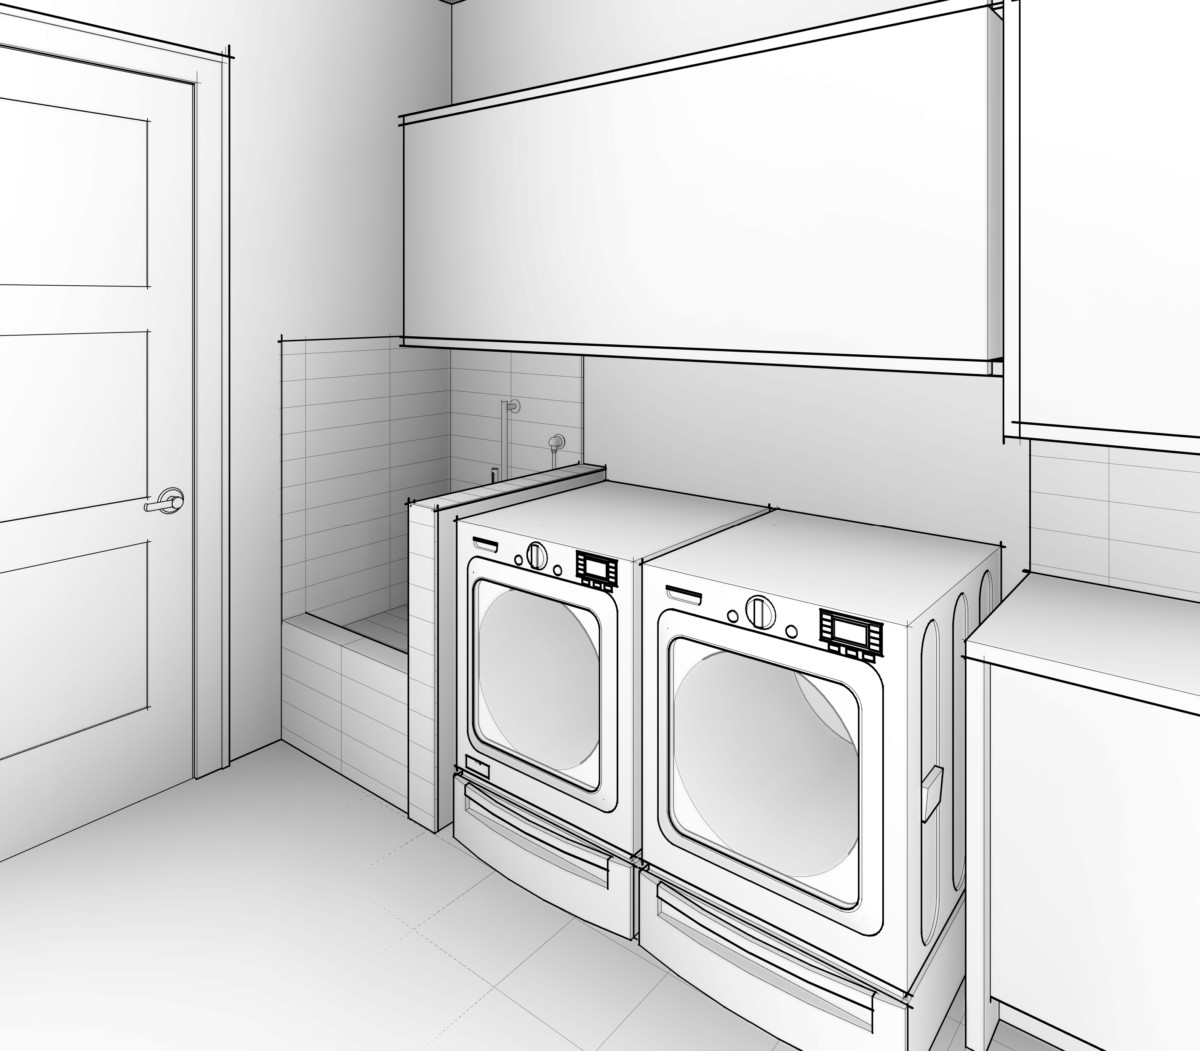 Kerker Residence laundry room rendering